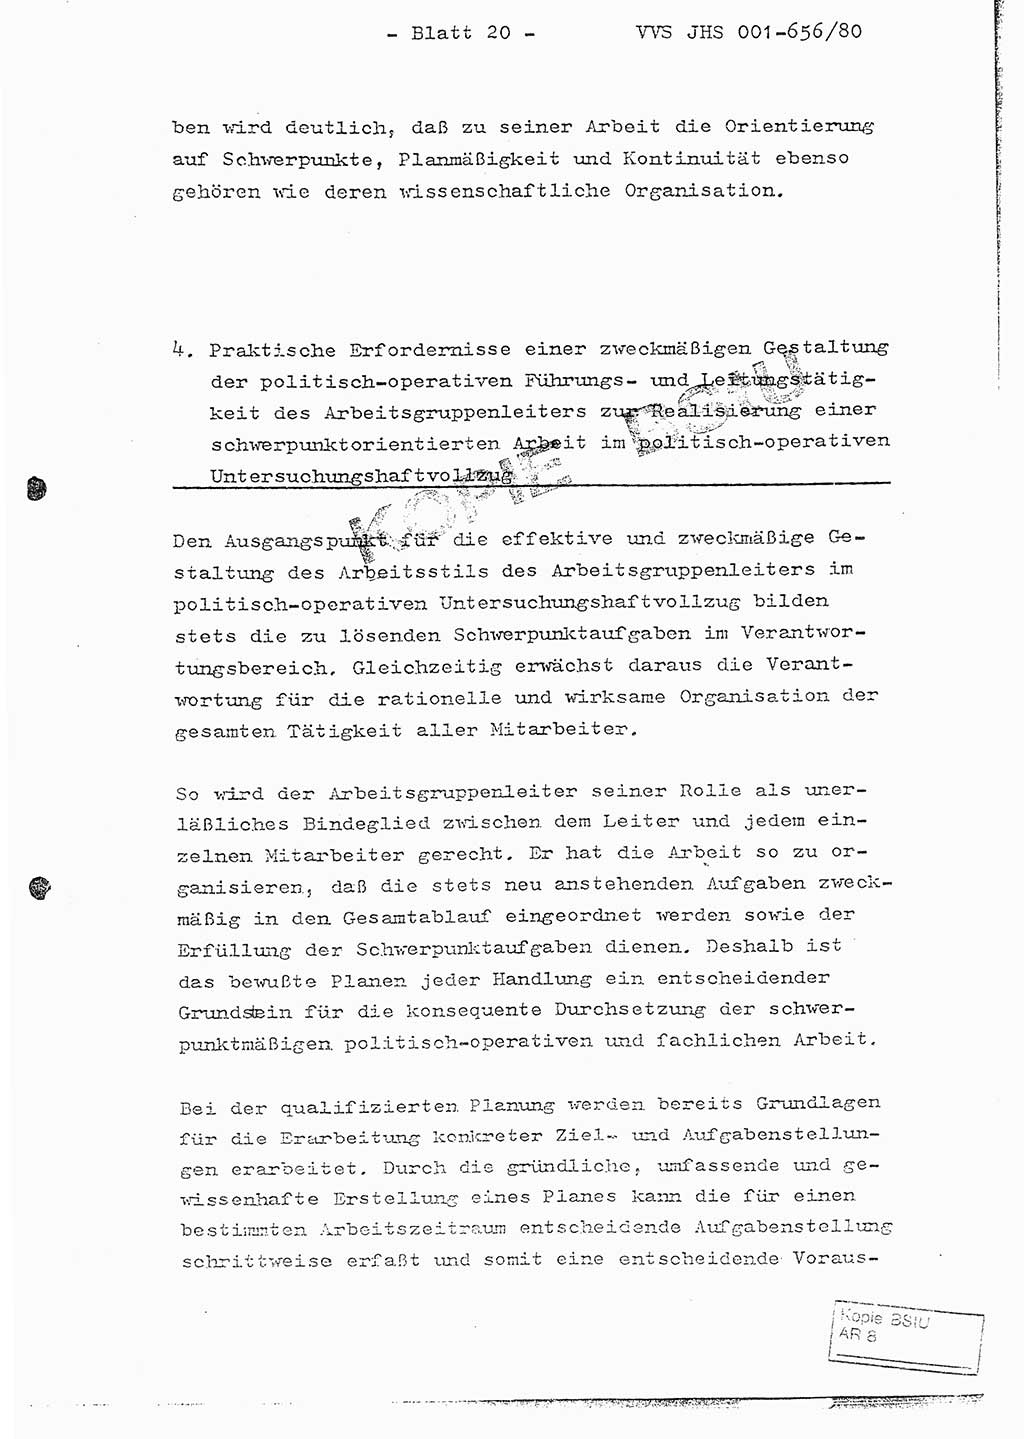 Fachschulabschlußarbeit Unterleutnant Christian Kätzel (Abt. ⅩⅣ), Ministerium für Staatssicherheit (MfS) [Deutsche Demokratische Republik (DDR)], Juristische Hochschule (JHS), Vertrauliche Verschlußsache (VVS) 001-656/80, Potsdam 1980, Blatt 20 (FS-Abschl.-Arb. MfS DDR JHS VVS 001-656/80 1980, Bl. 20)